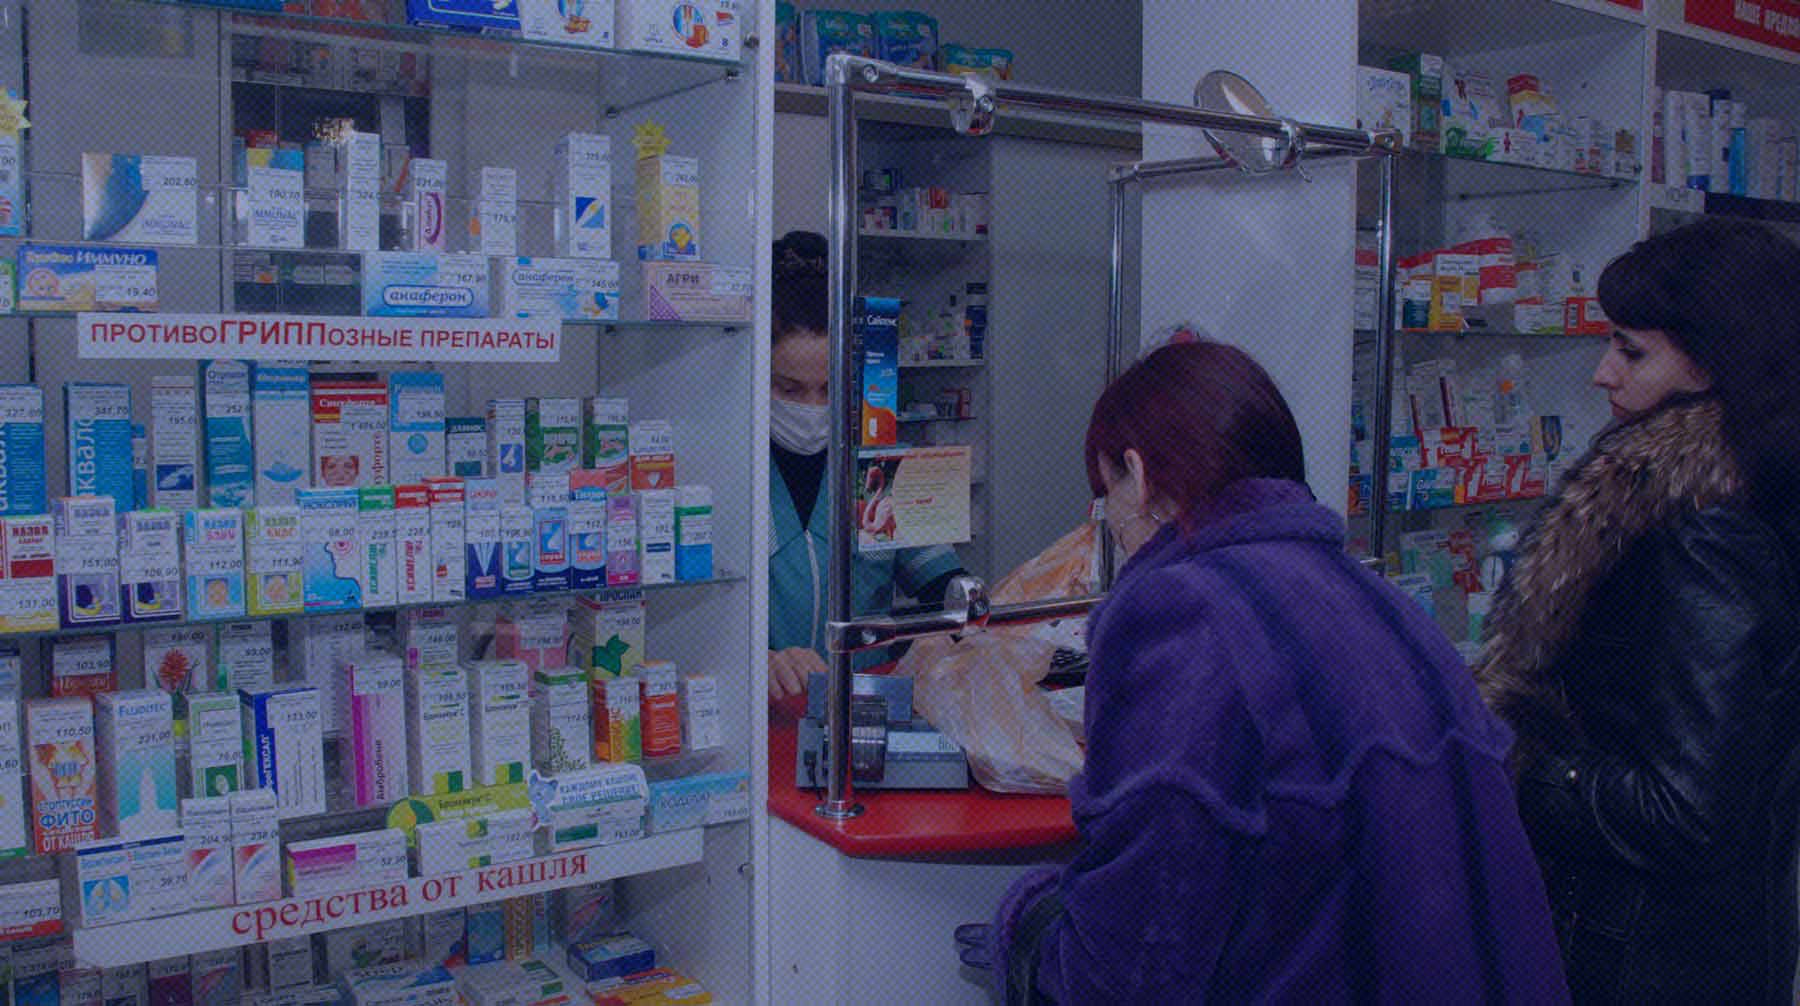 Dailystorm - Врачи объяснили, почему в аптеках пропал препарат, без которого не могут жить люди с больной щитовидкой